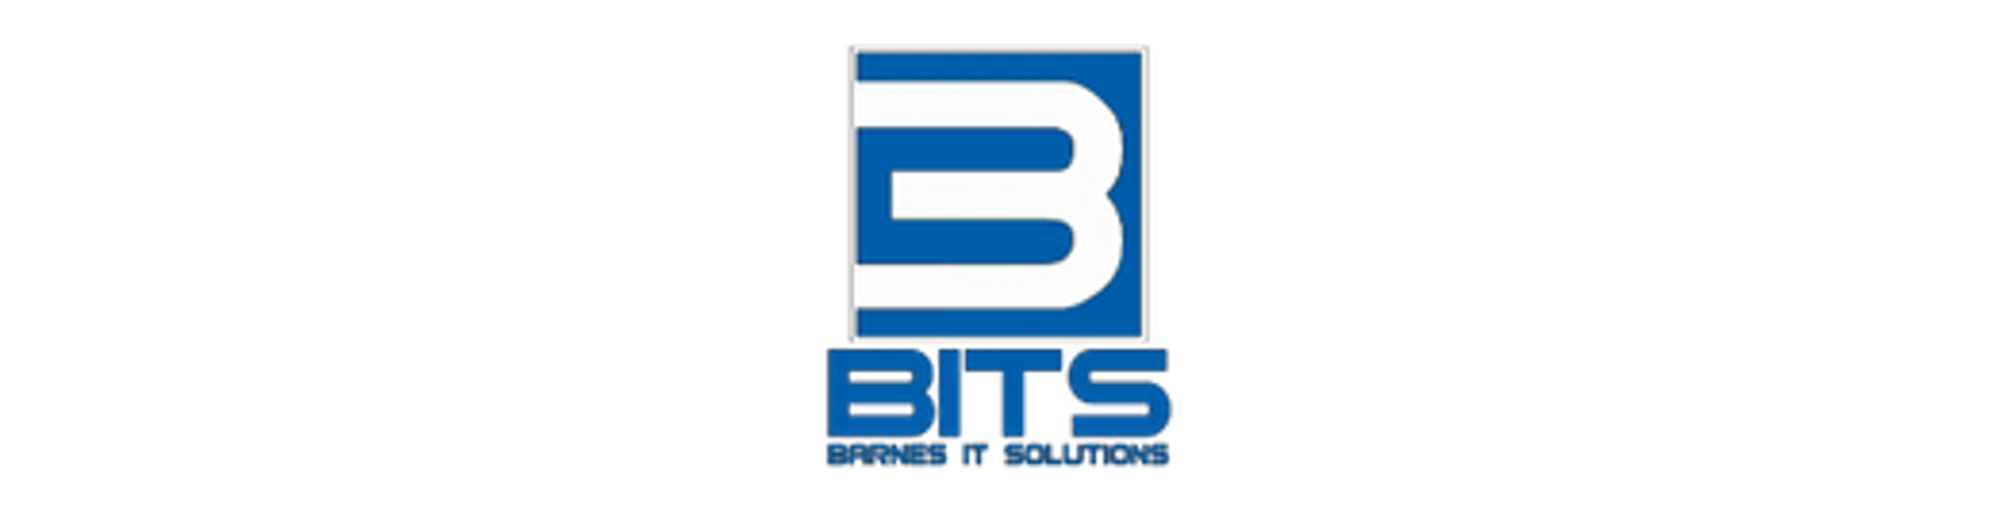 Barnes IT Solutions